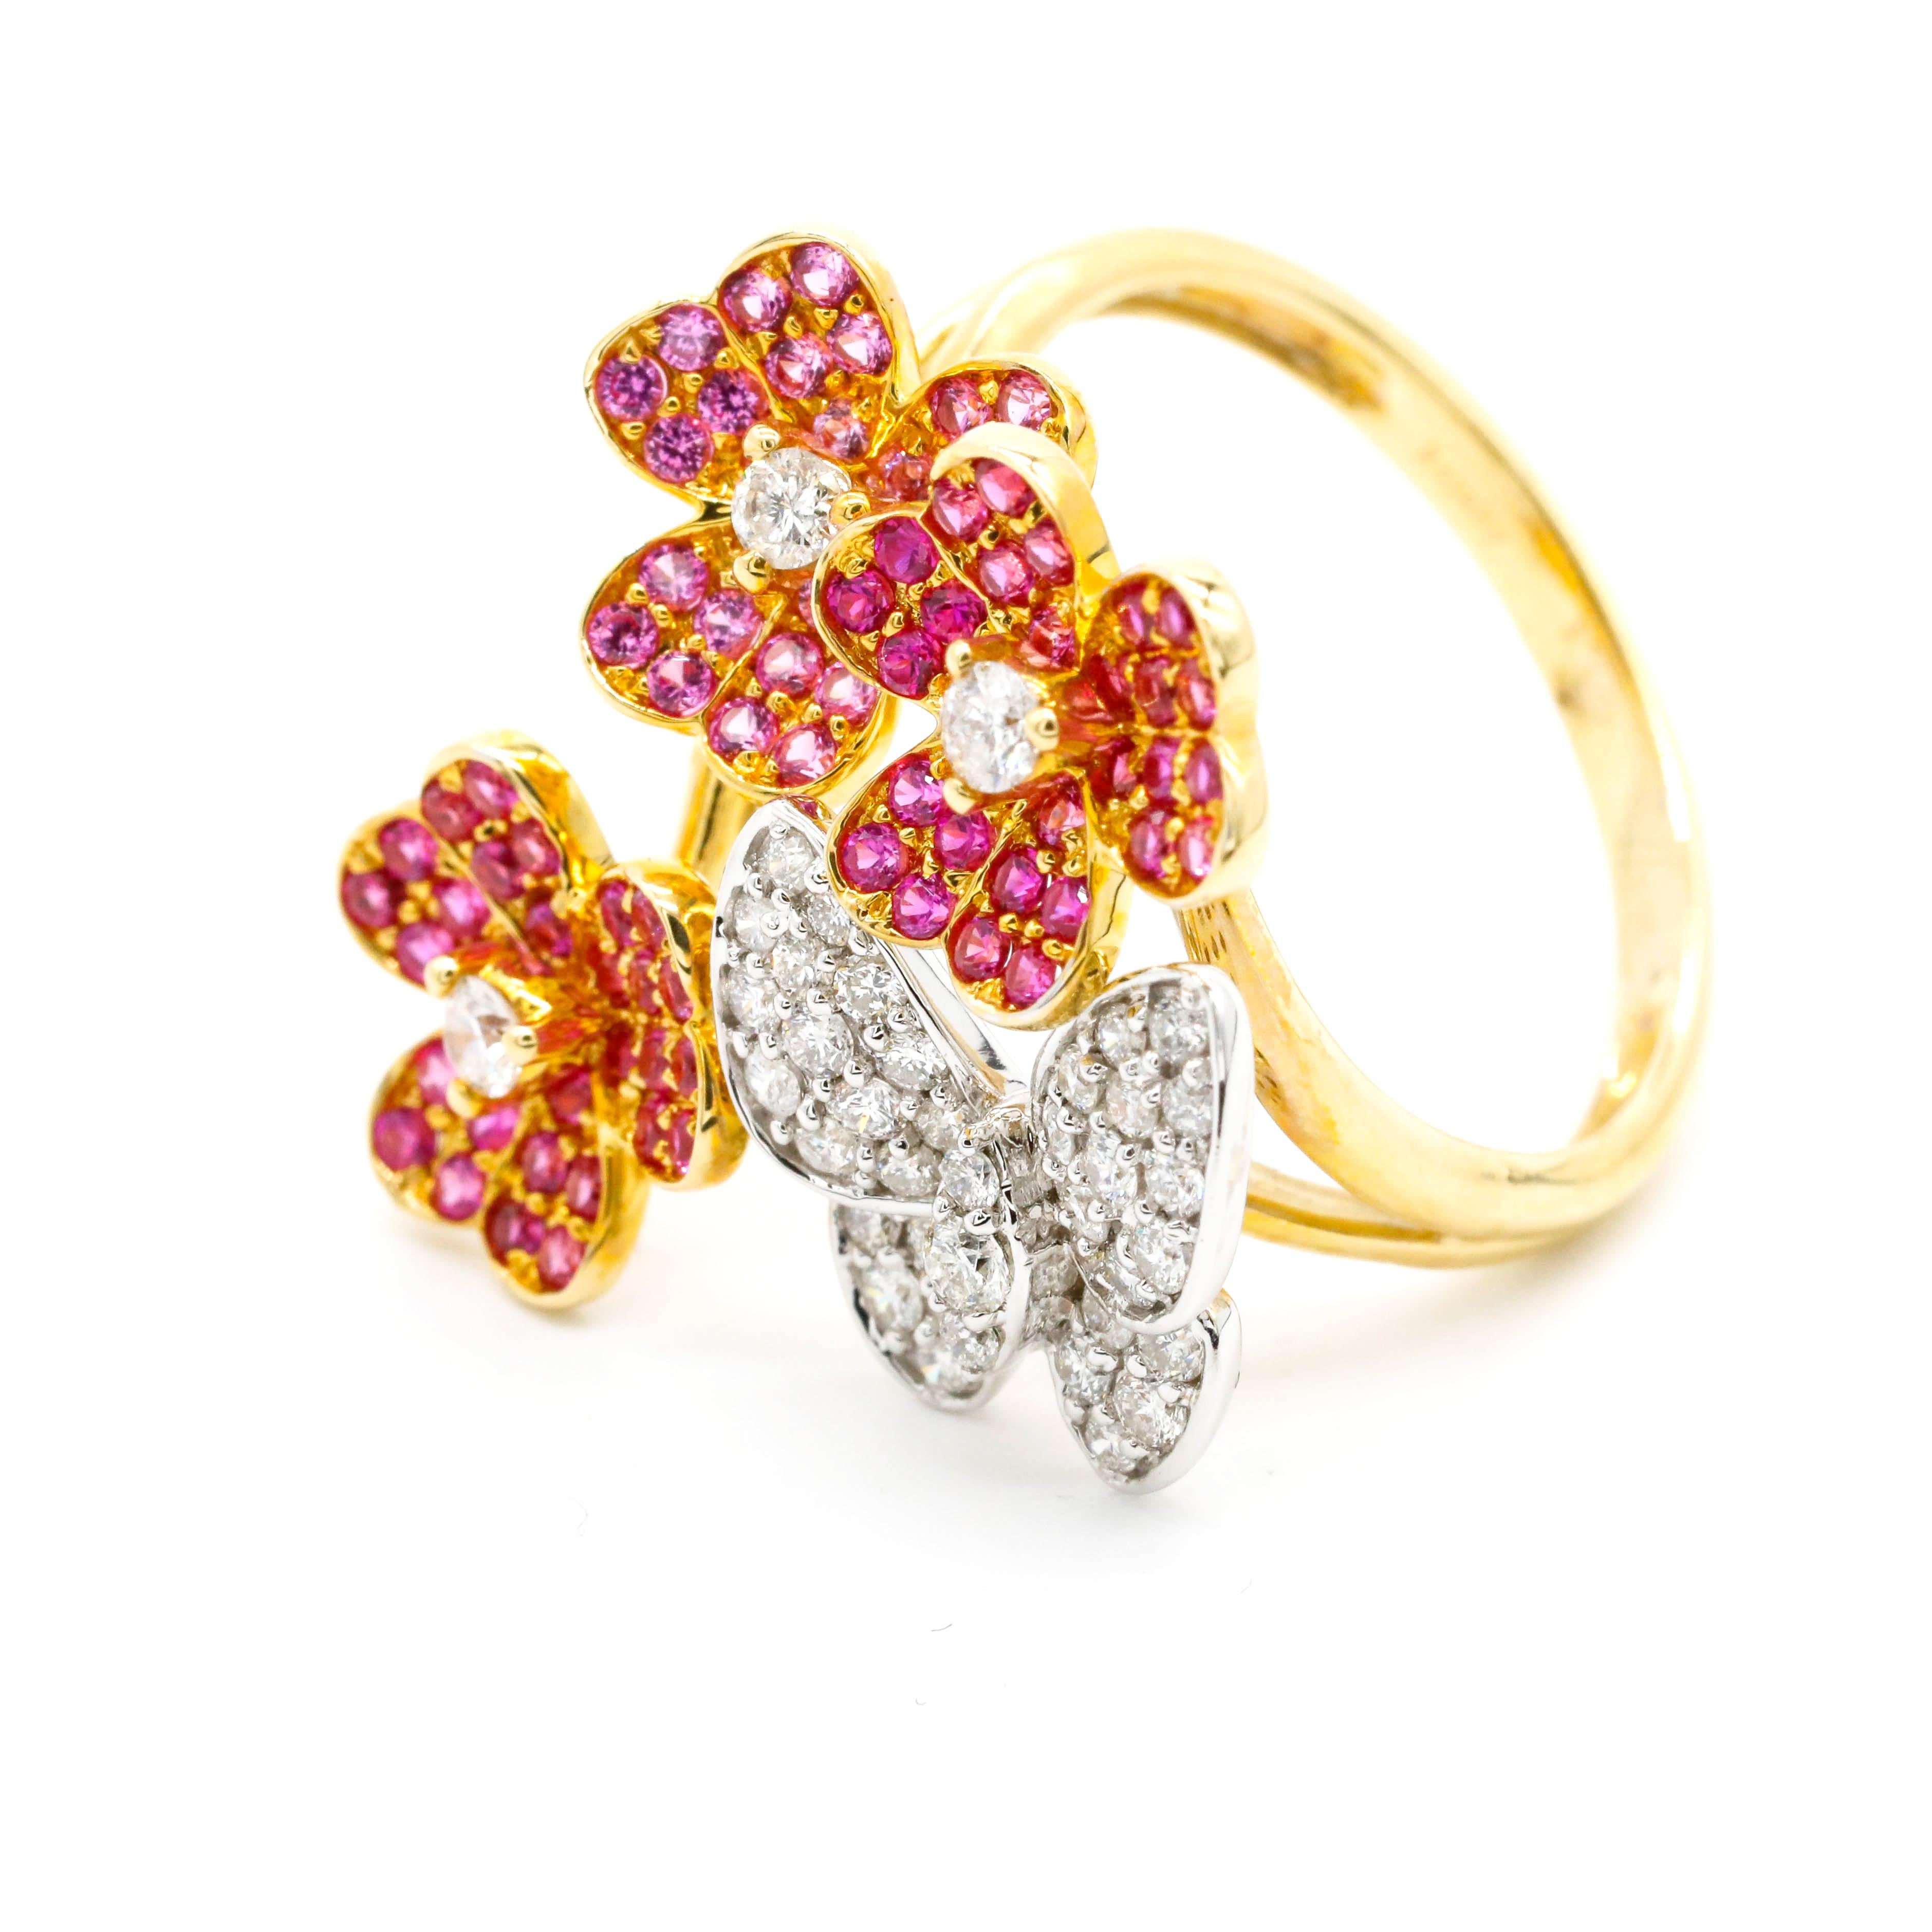 1,09 Karat rosa Saphir 0,63 Karat Diamant 14k Gelbgold Blume Schmetterling Ring

Dieser moderne Ring verfügt über insgesamt 0,63 Karat Diamanten runde Form Pink Sapphire Edelstein in 14K Gelbgold gesetzt.

Wir garantieren für alle verkauften